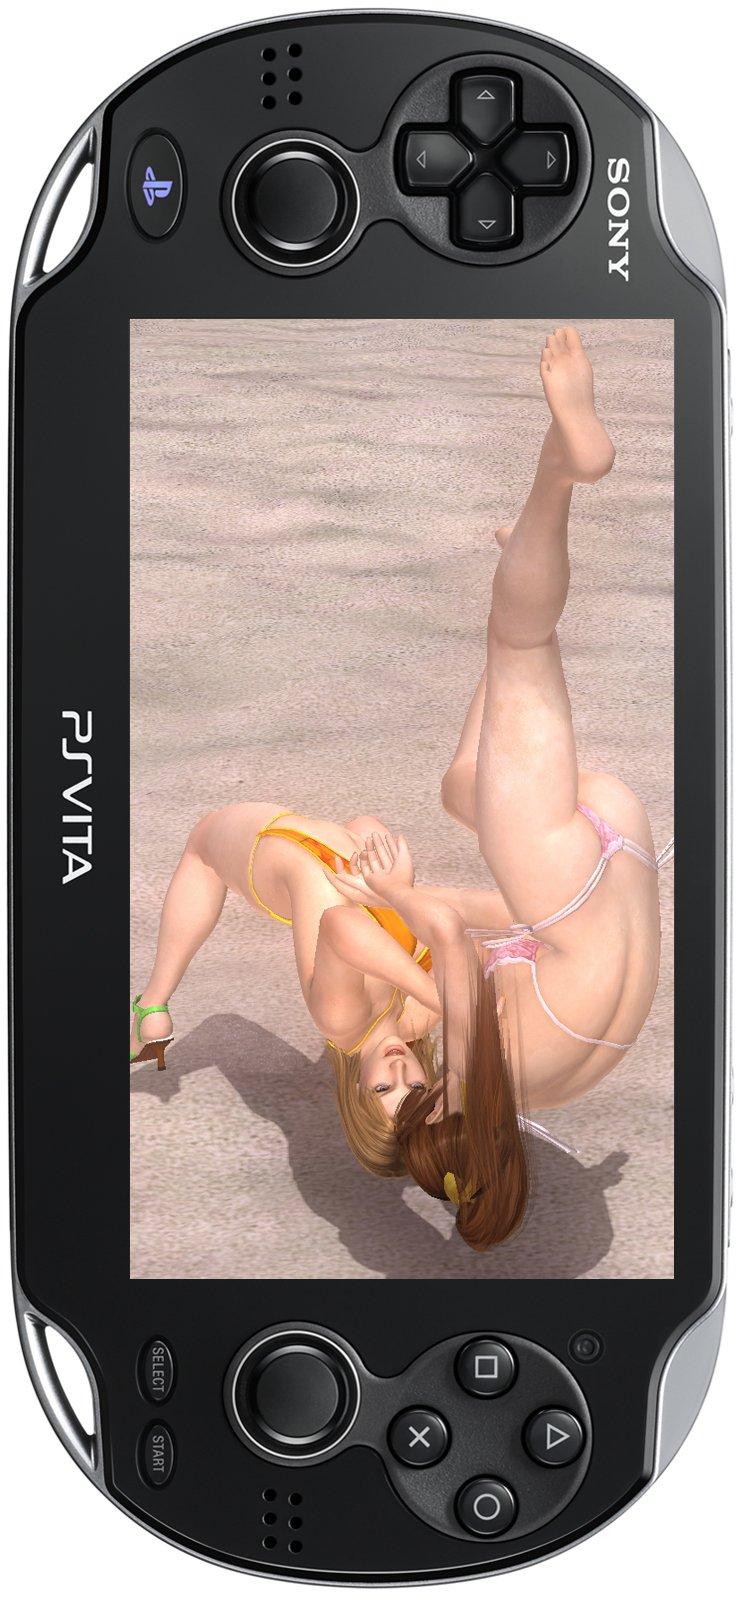 Dead or Alive 5 Plus - PS Vita | Koei Tecmo | GameStop